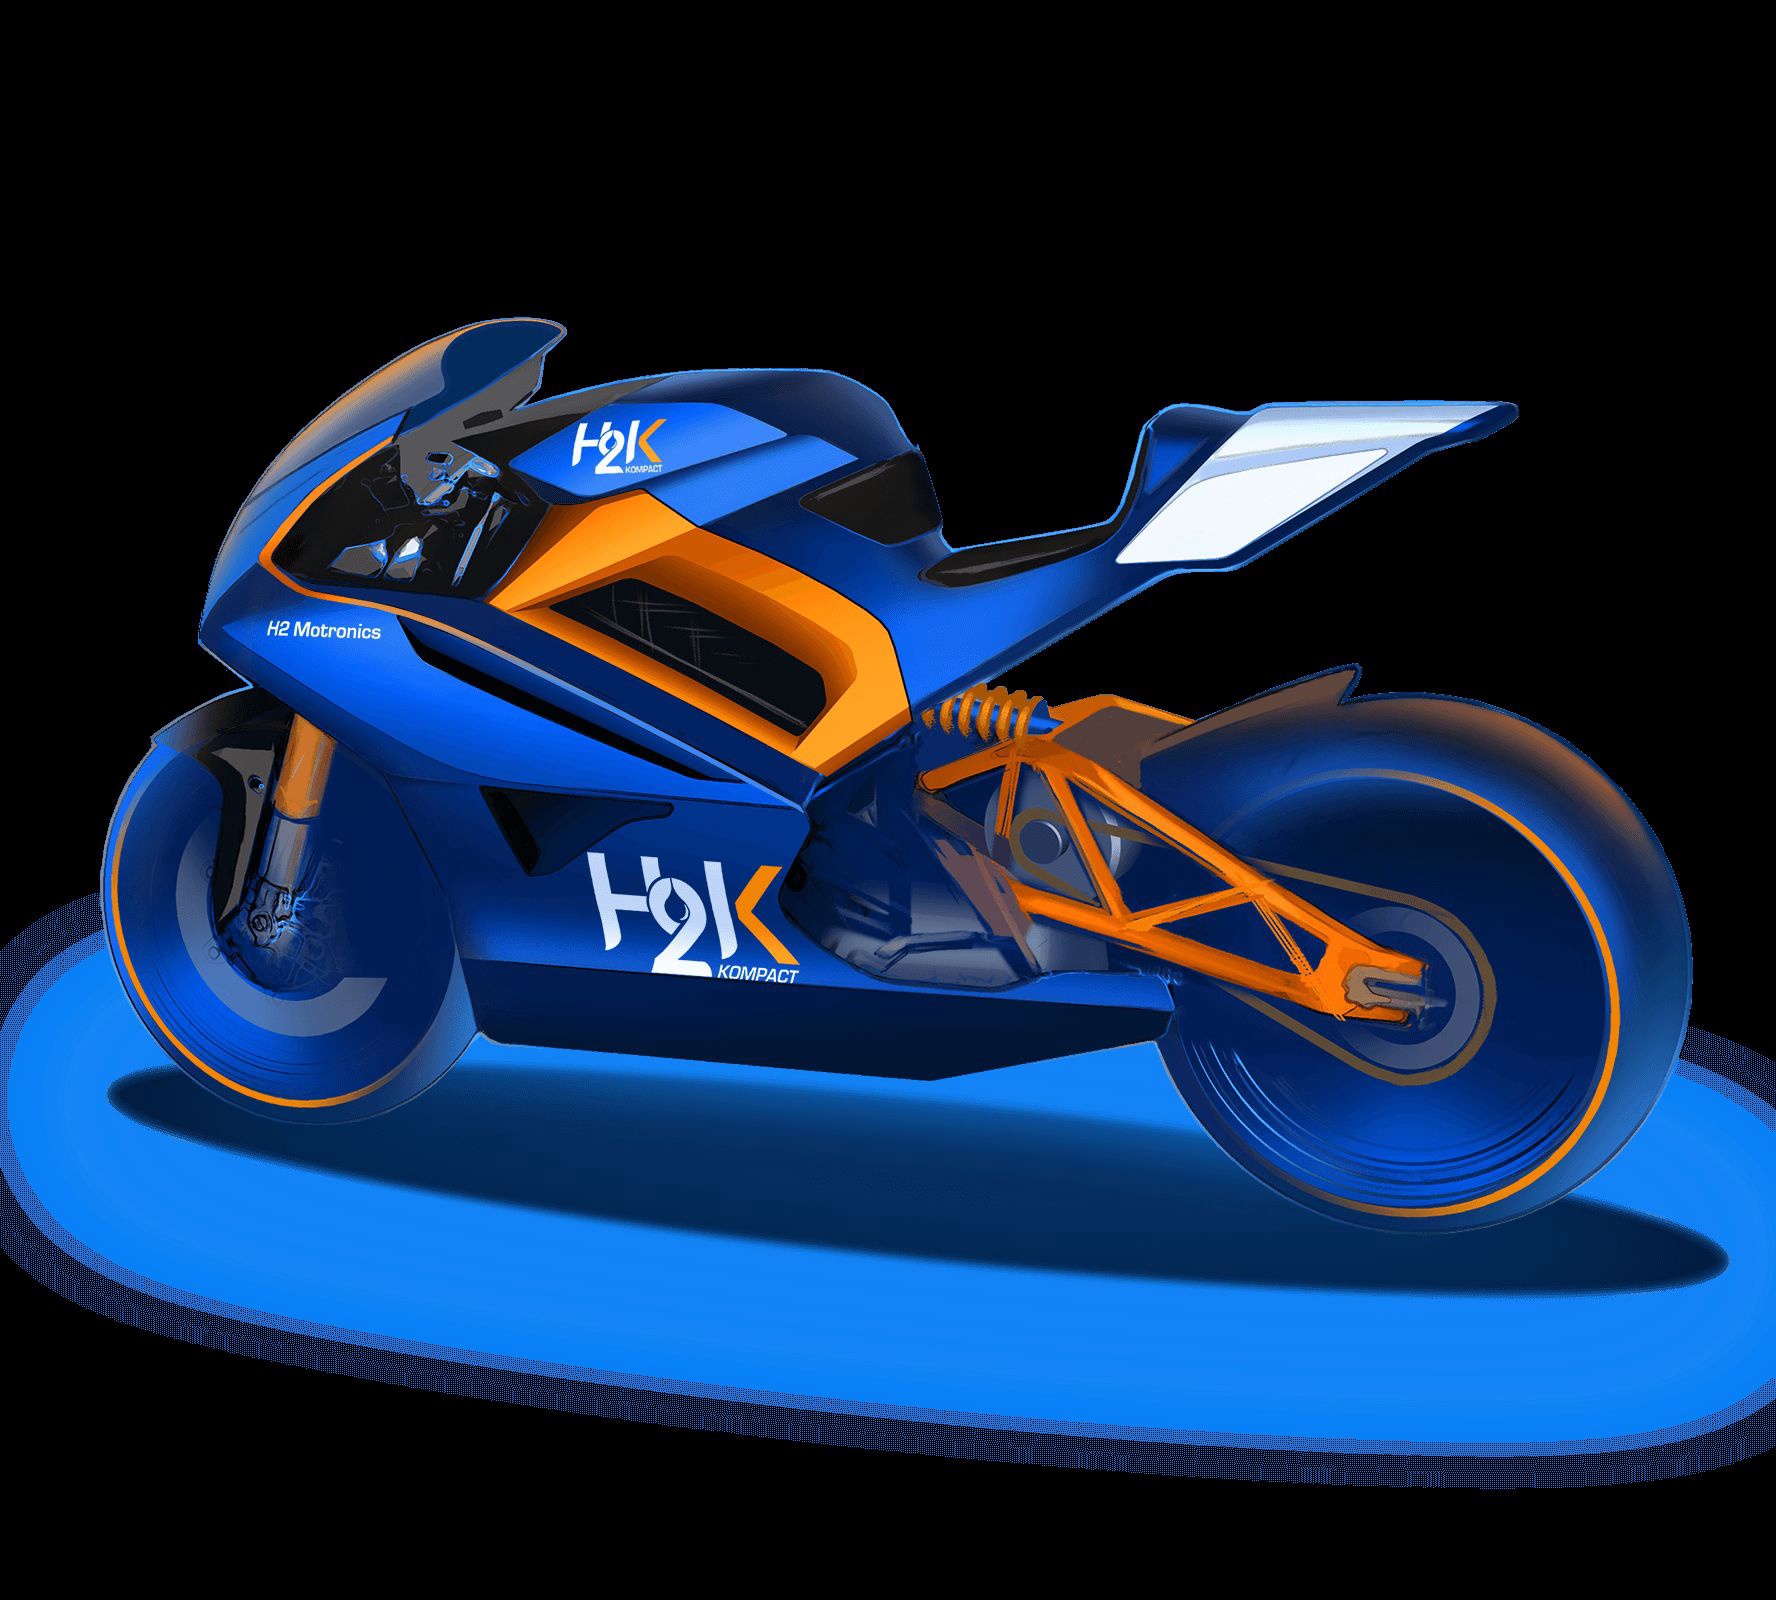 Мотоновости → H2 Motronics - водородный мотоцикл, премьера планируется весной 2022